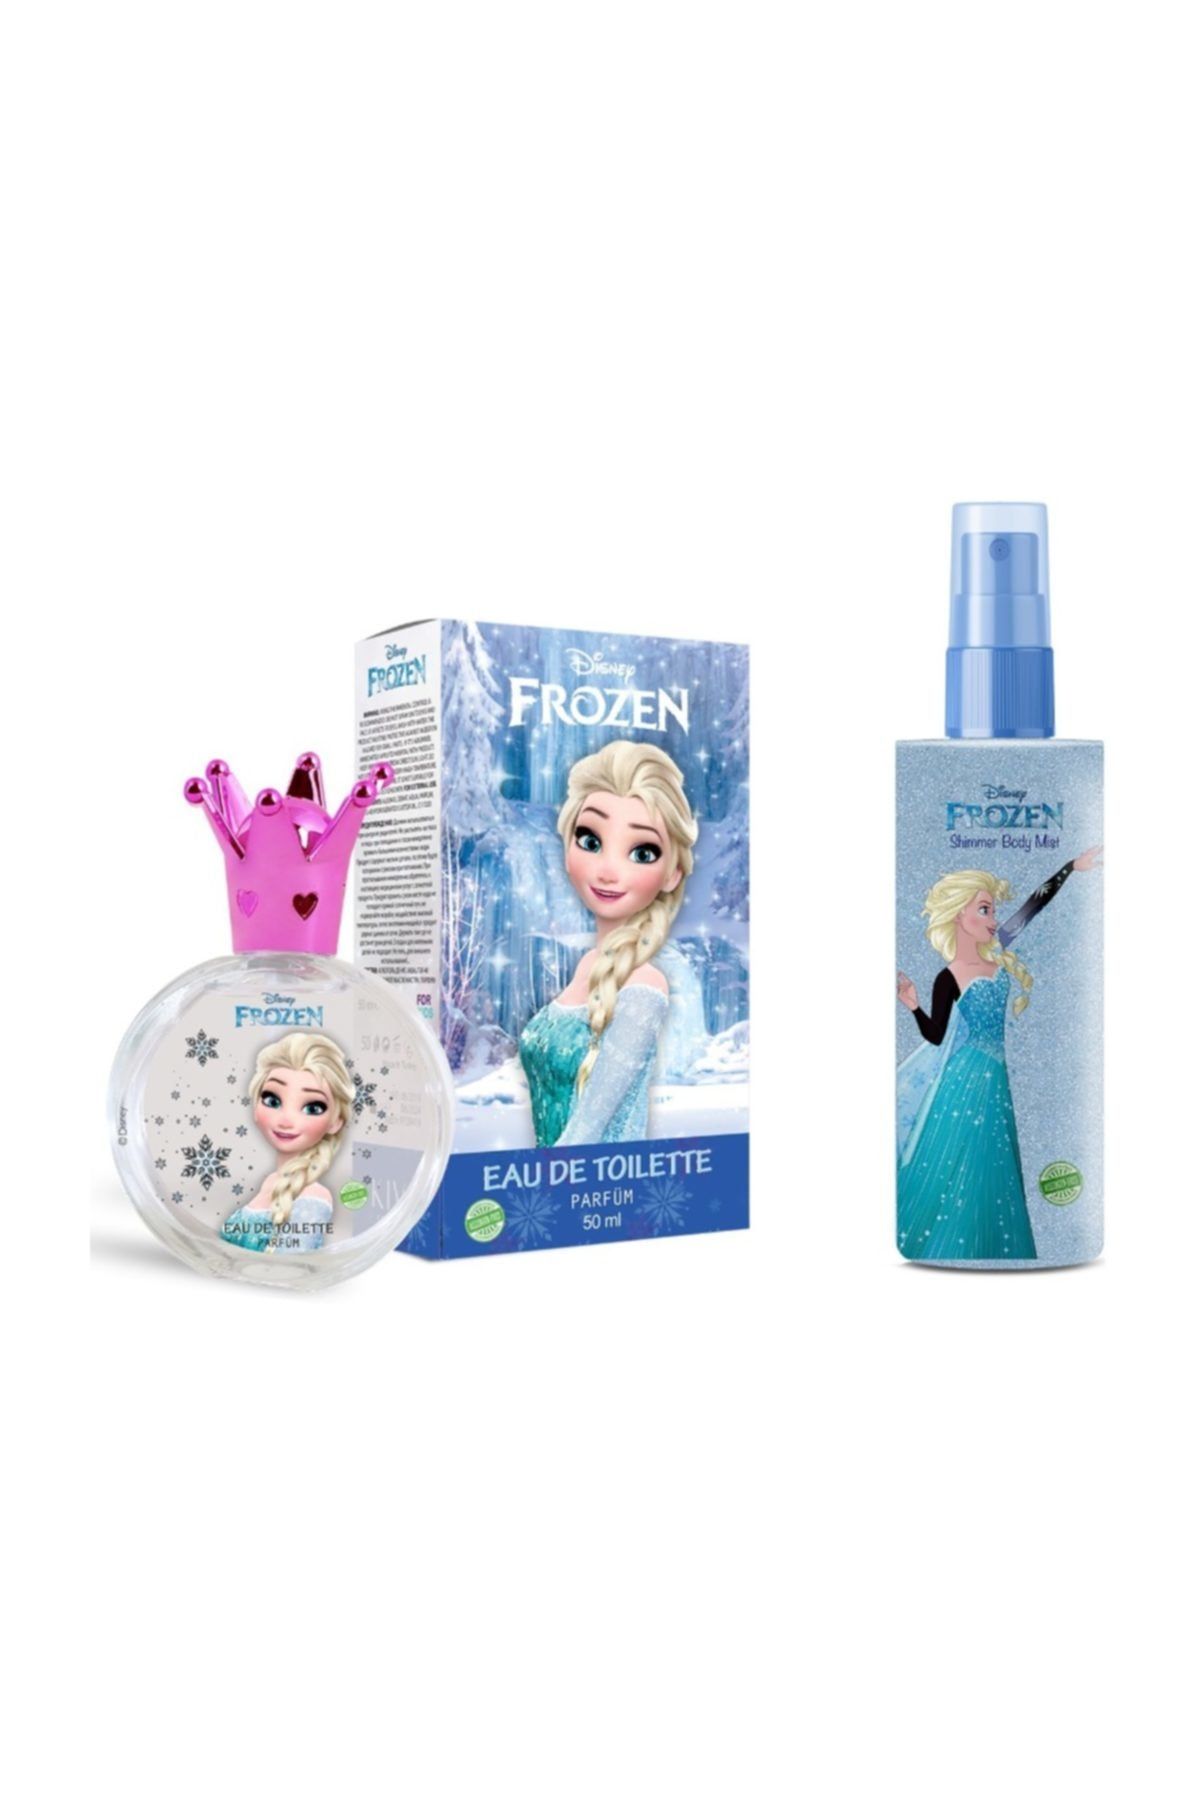 DİSNEY Frozen Elsa 50ml Parfüm + Elsa Body Mist